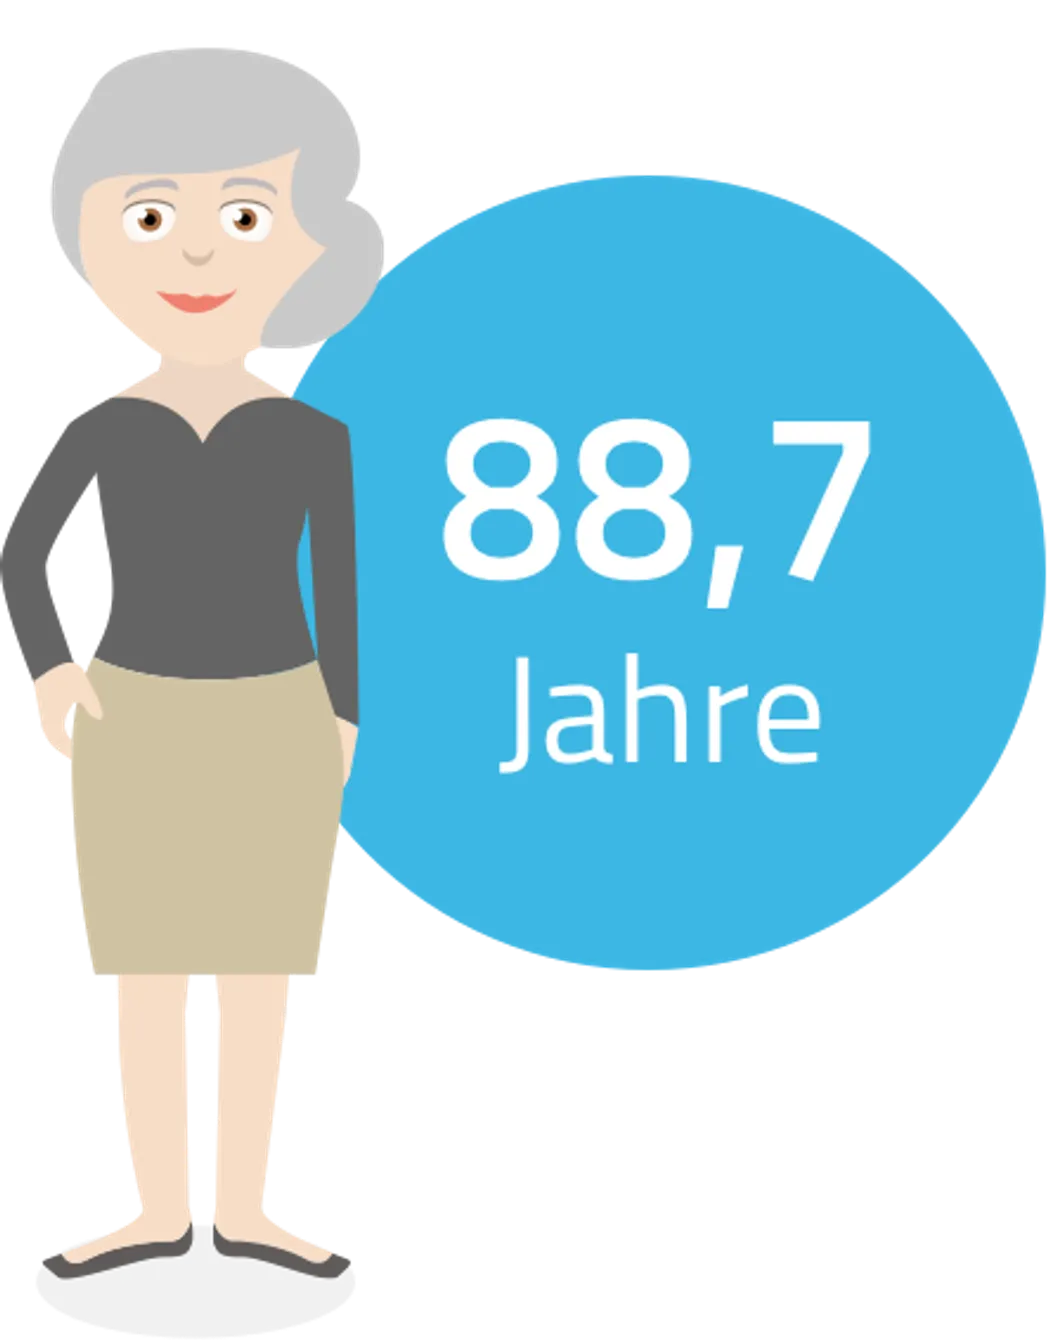 Altersvorsorge - Frauen werden in Deutschland durchschnittlich 88,7 Jahre alt.